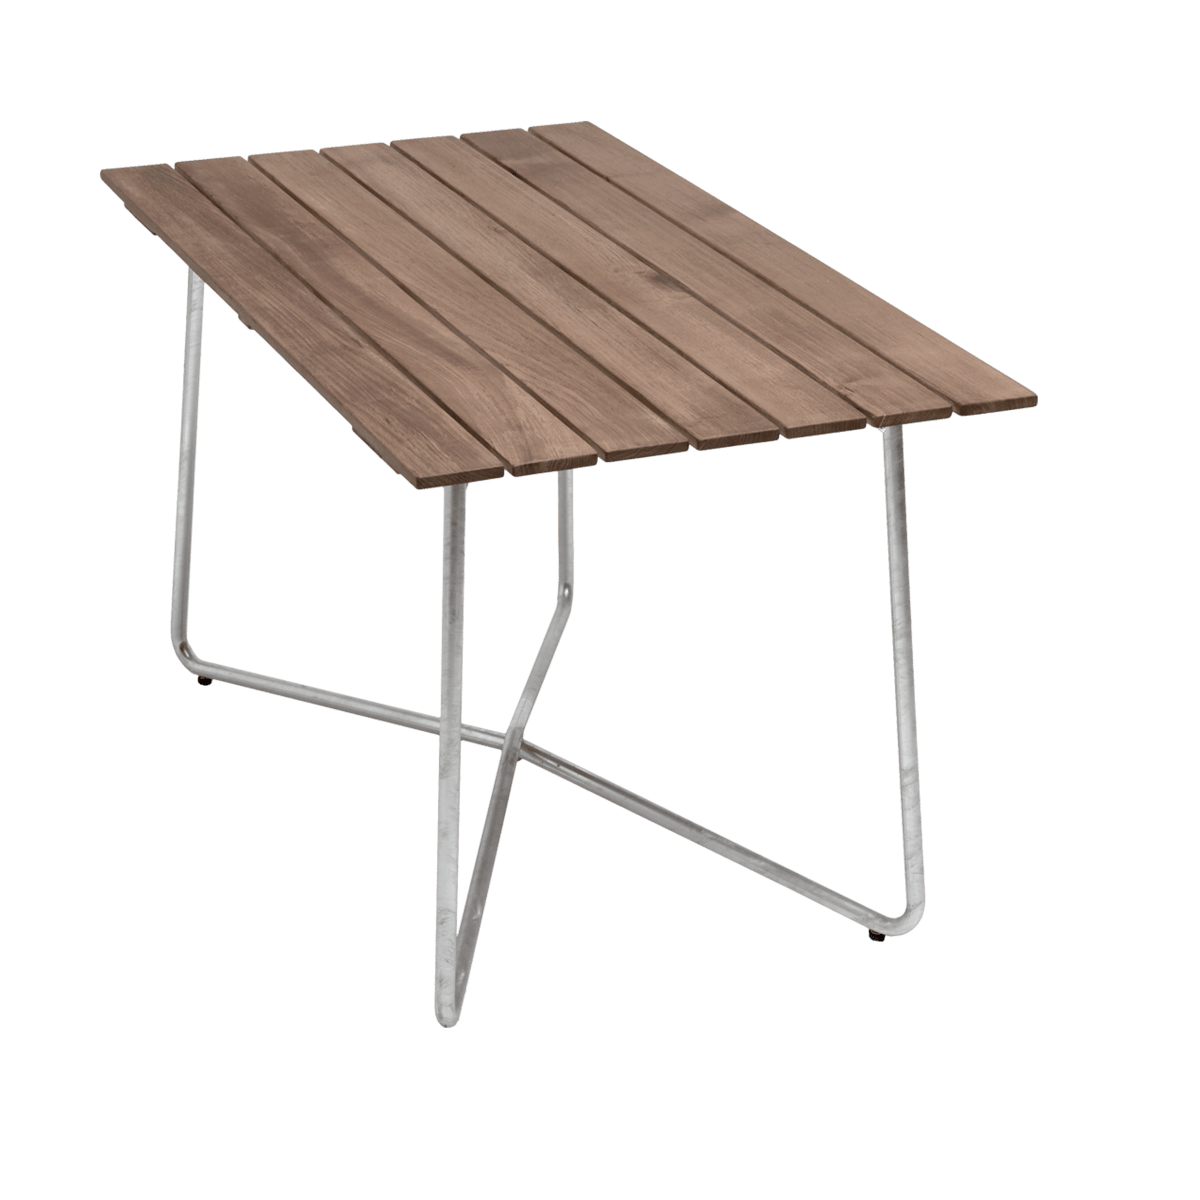 Grythyttan Stålmöbler B25A tafel Teak-verzinkt frame